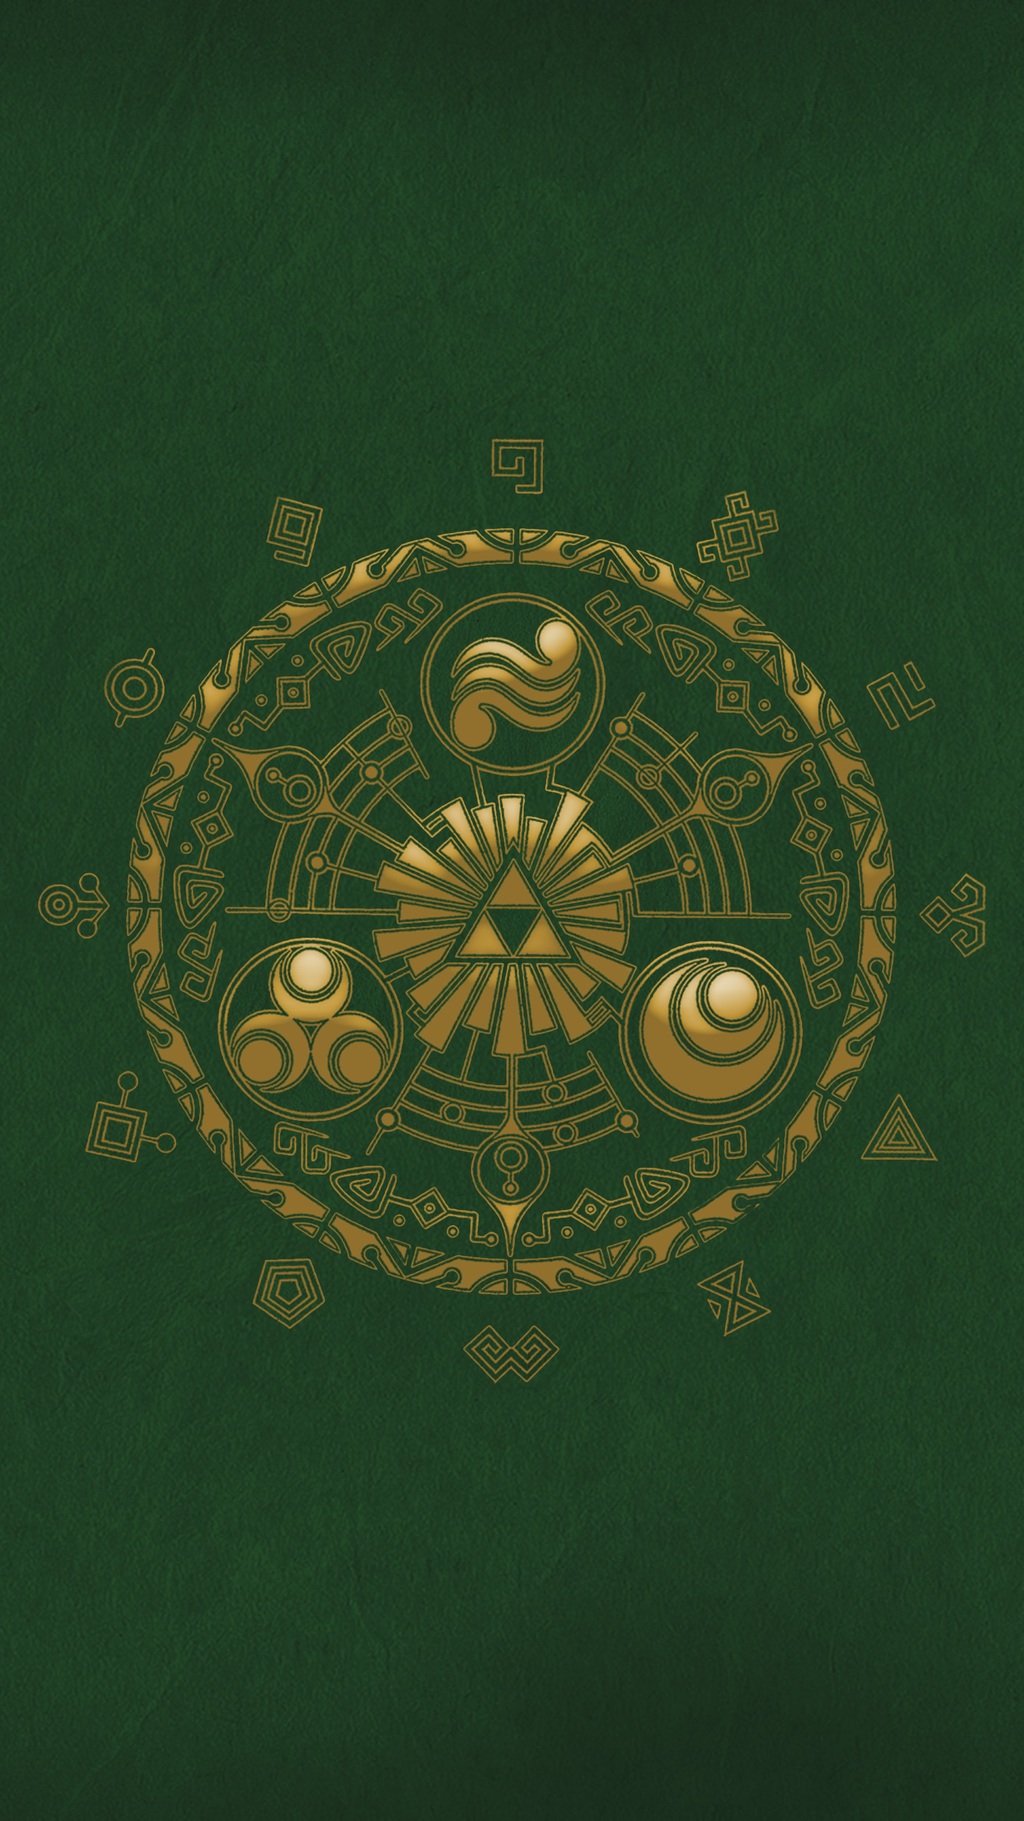 Legend of Zelda - Hyrule Historia iPhone Wallpaper by jamesgunaca ...